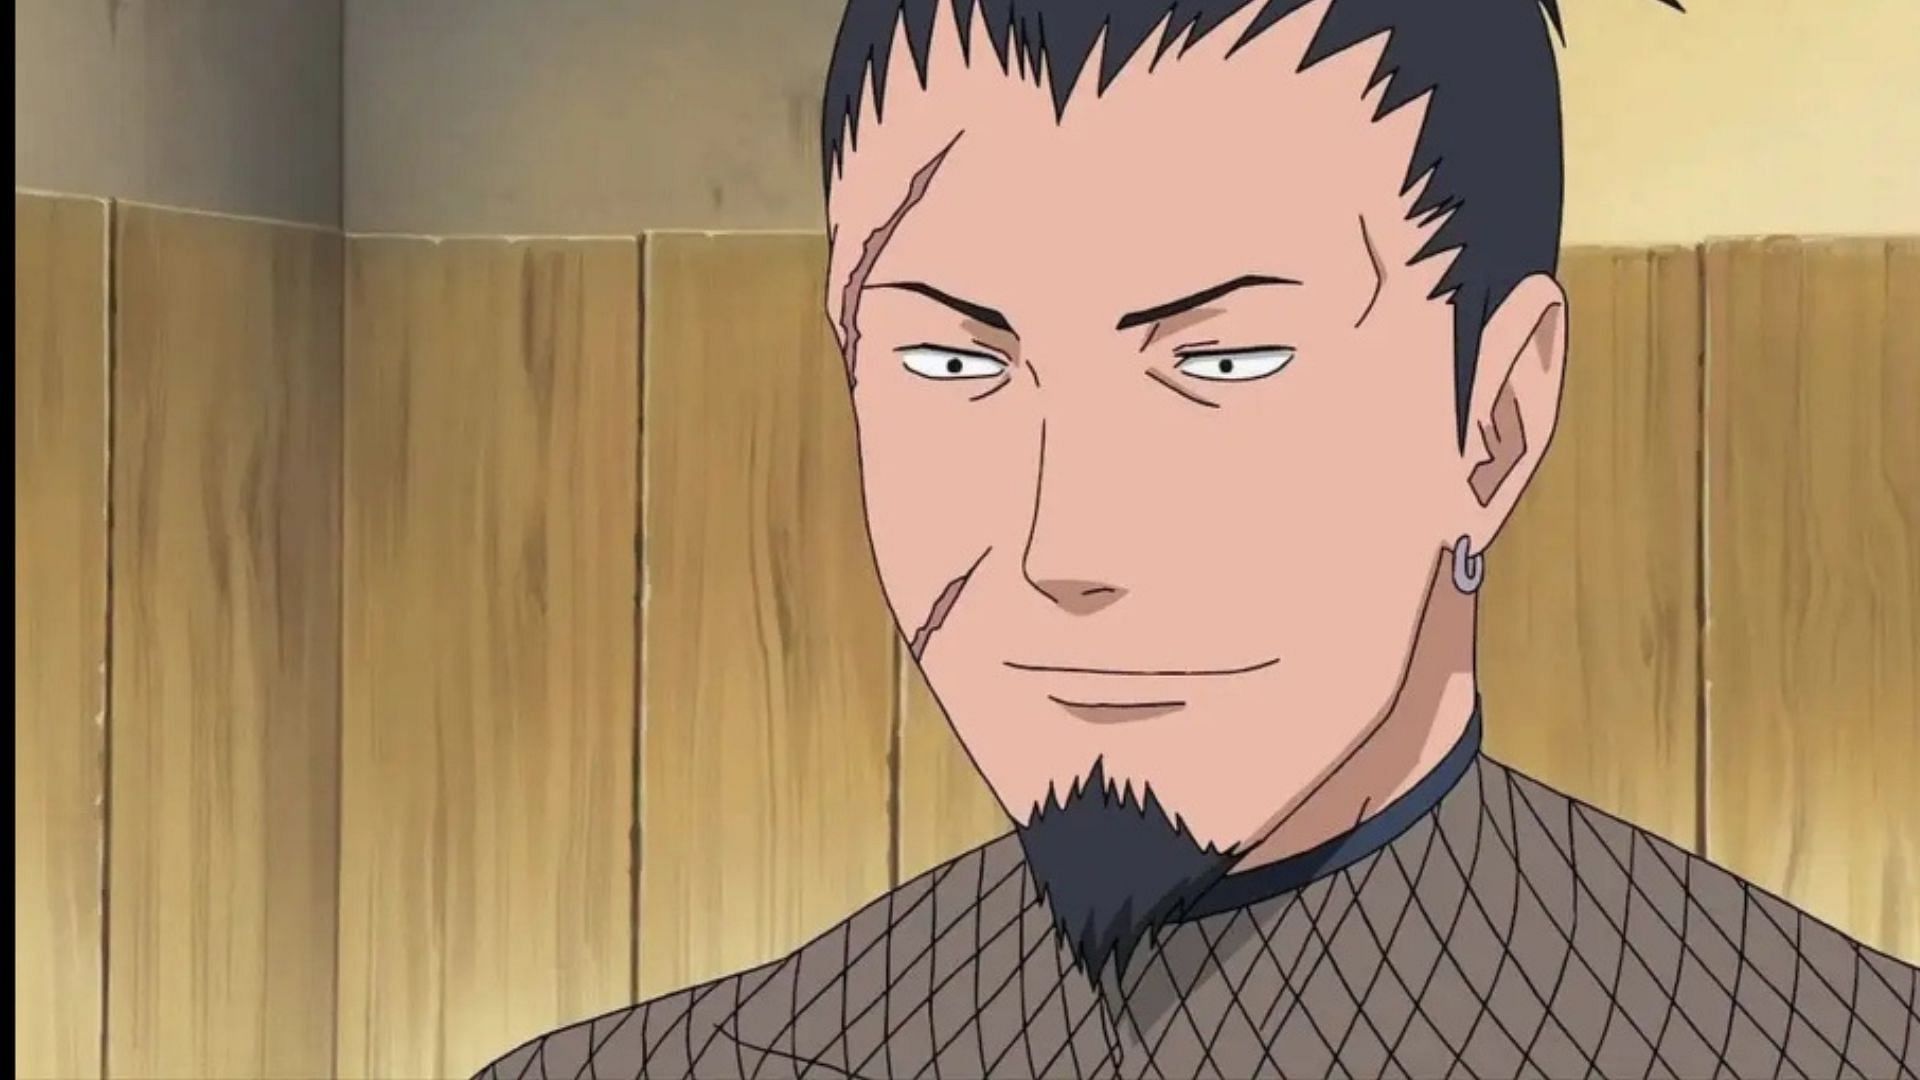 Nara Shikaku as seen in  the anime Naruto (Image via Studio Pierrot)